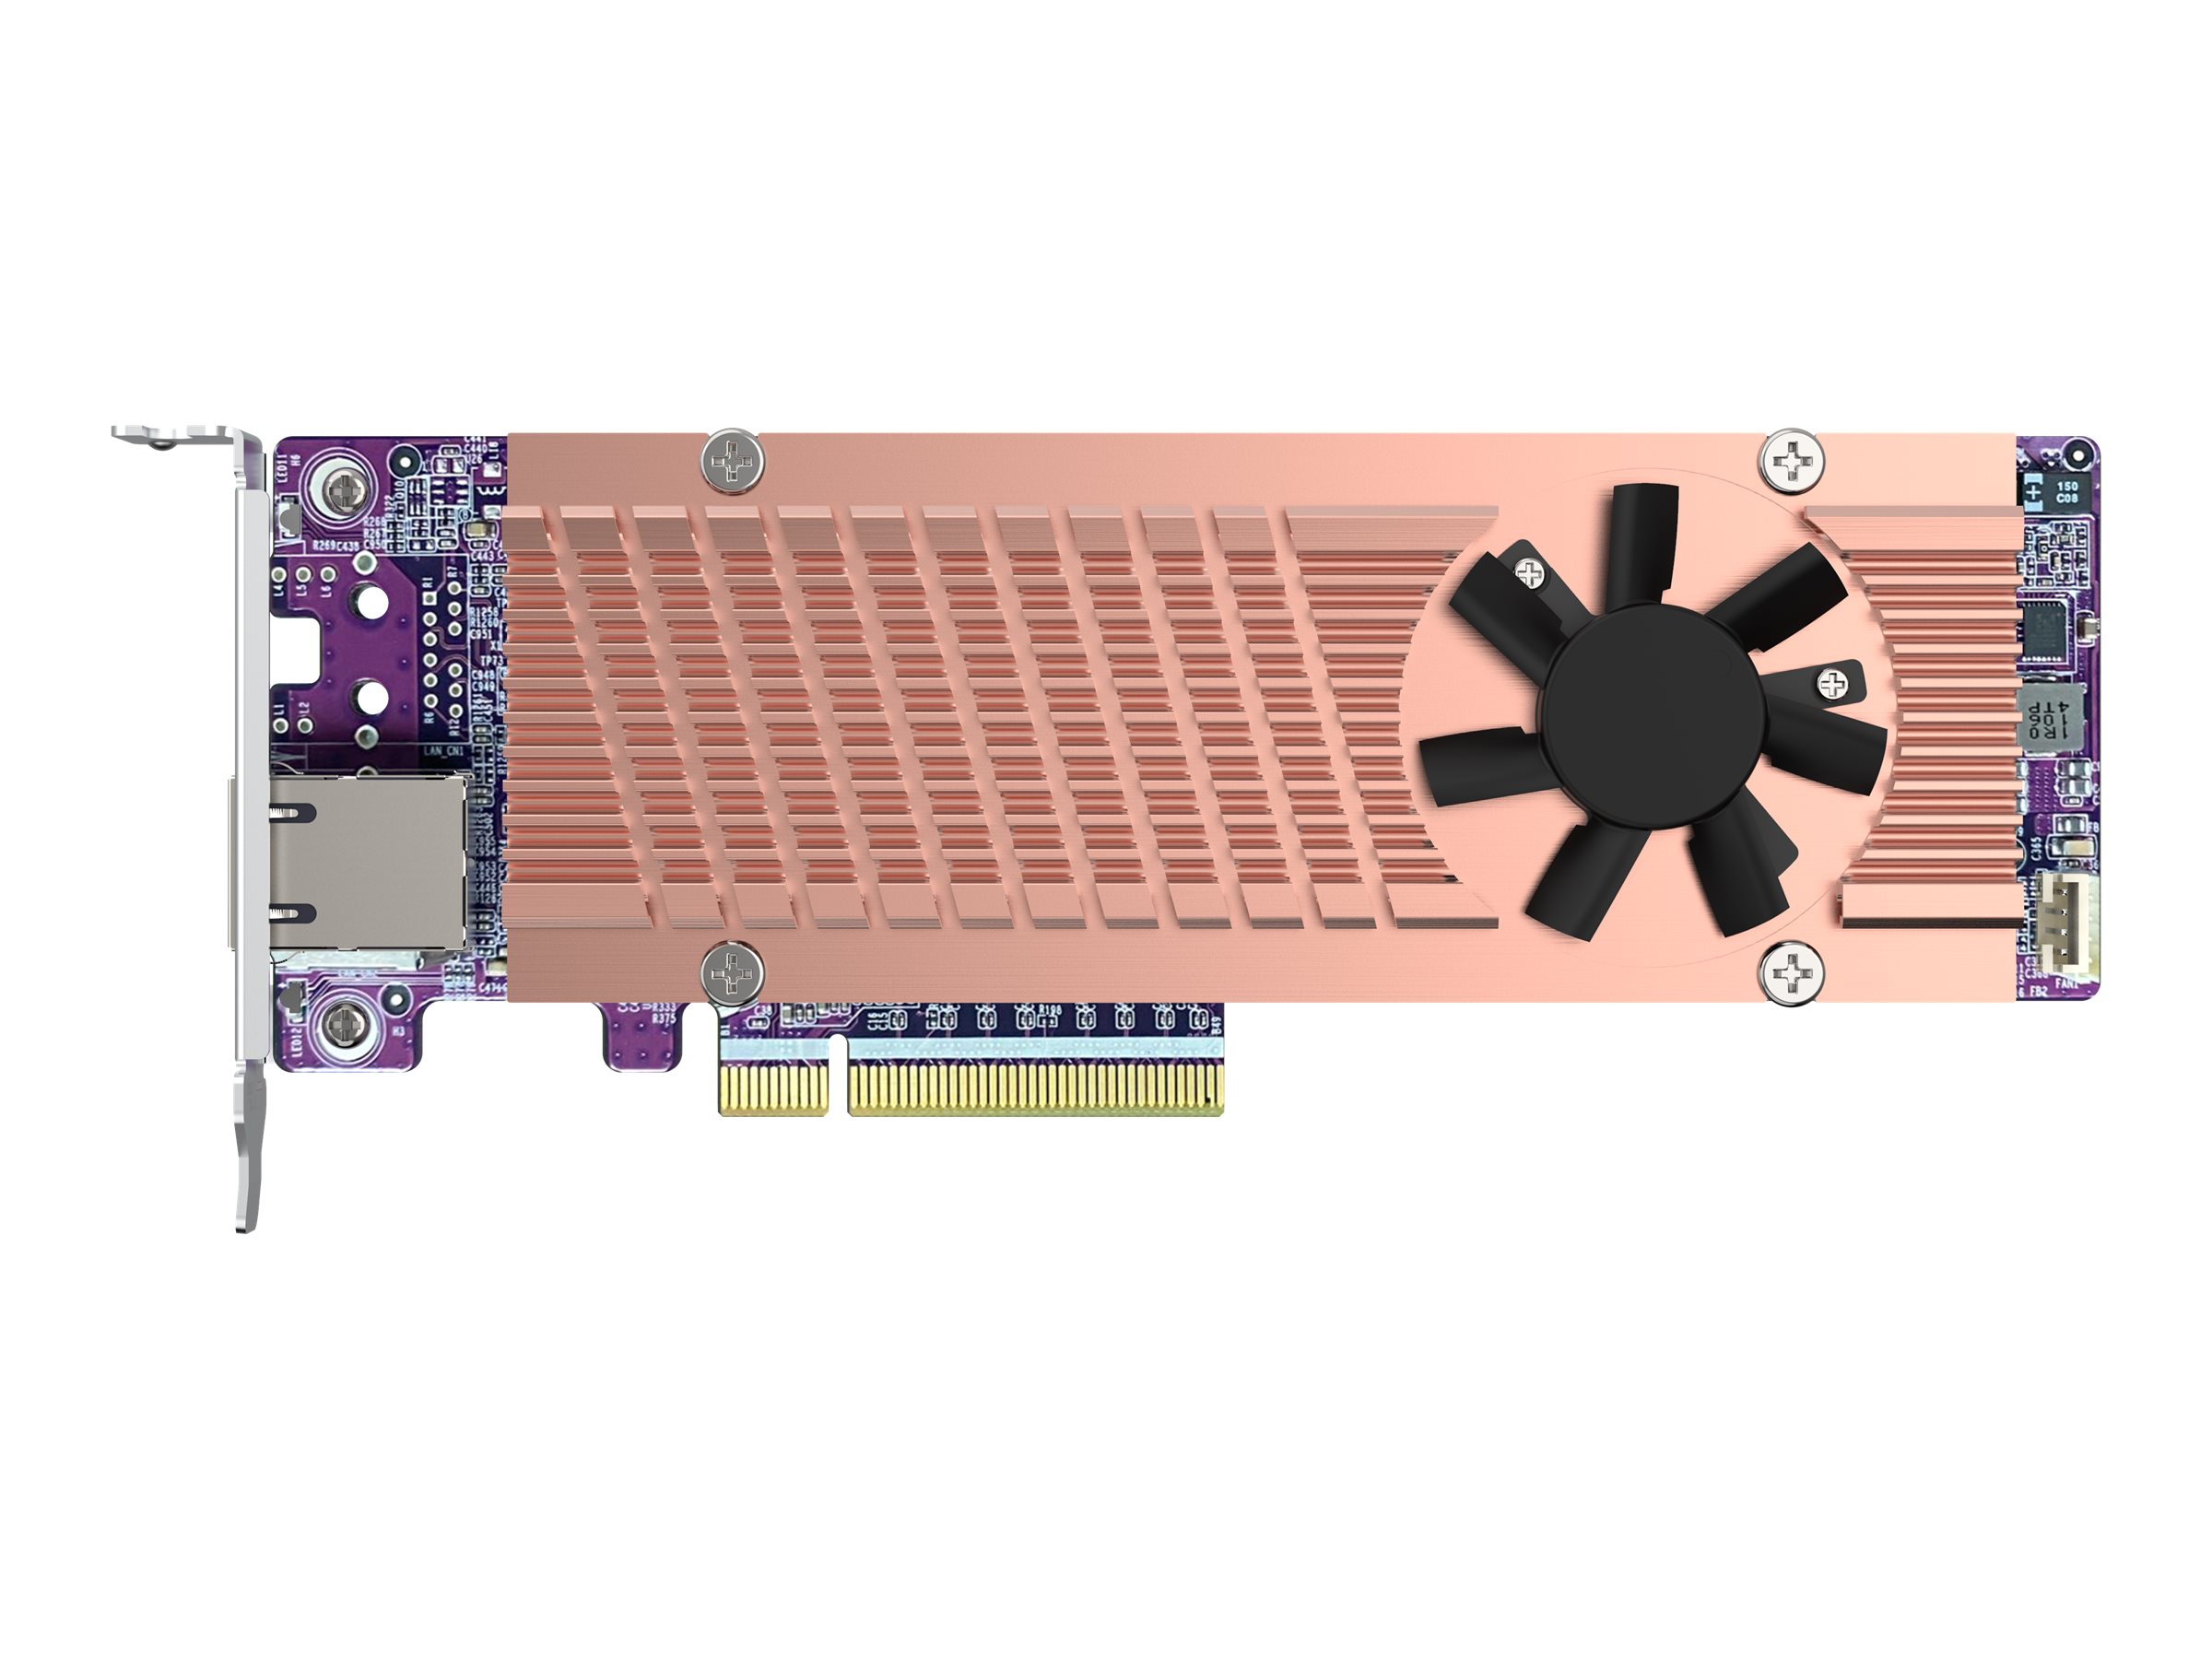 QNAP QM2-2P410G2T - Speicher-Controller mit 2 x 10GBASE-T Ports - M.2 - PCIe 4.0 x4 (NVMe) - Low-Profile - PCIe 4.0 x8